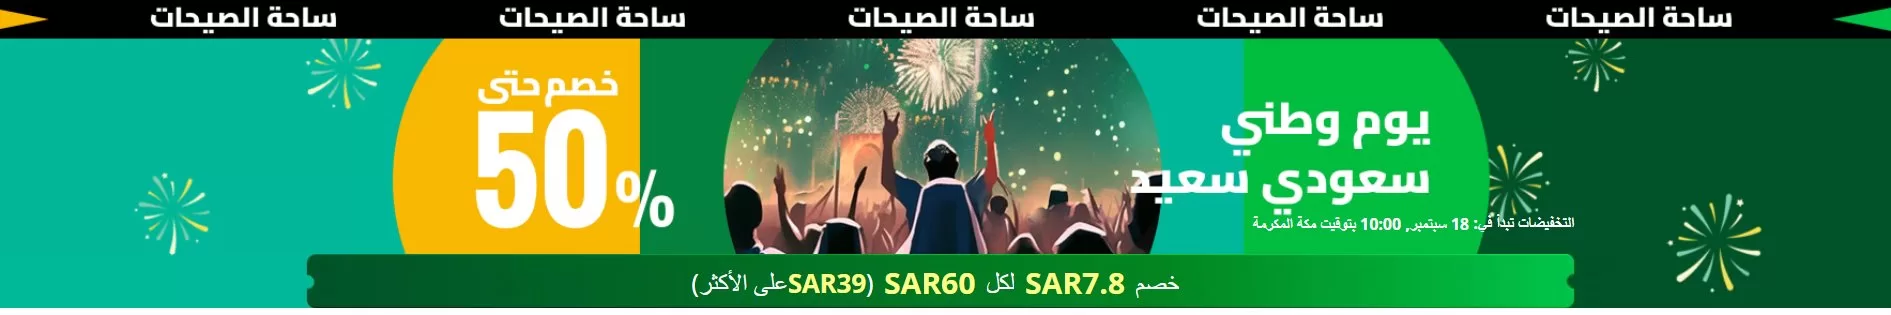 screenshot 2023 09 16 008 jpg - احتفال على اكسبرس باليوم الوطني السعودي: خصومات تصل حتى 50%!